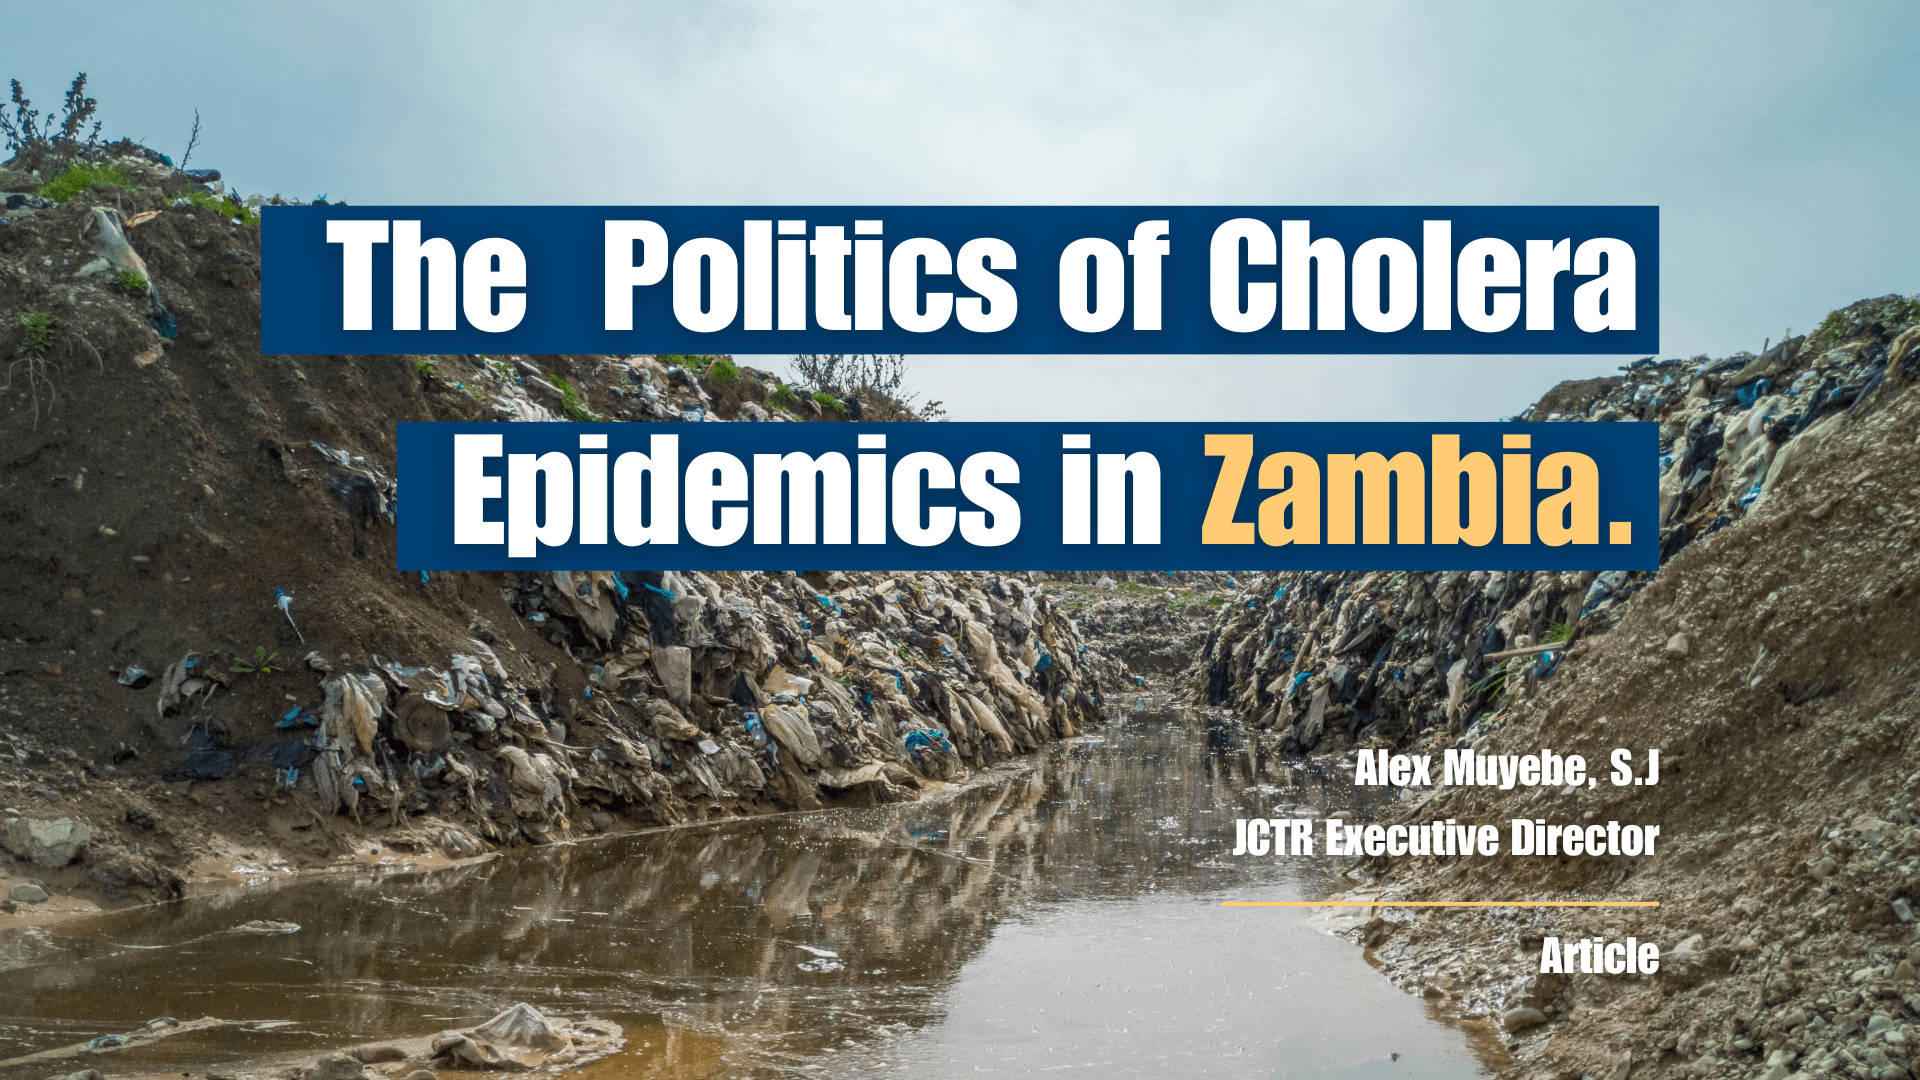 The Politics of Cholera Epidemics in Zambia